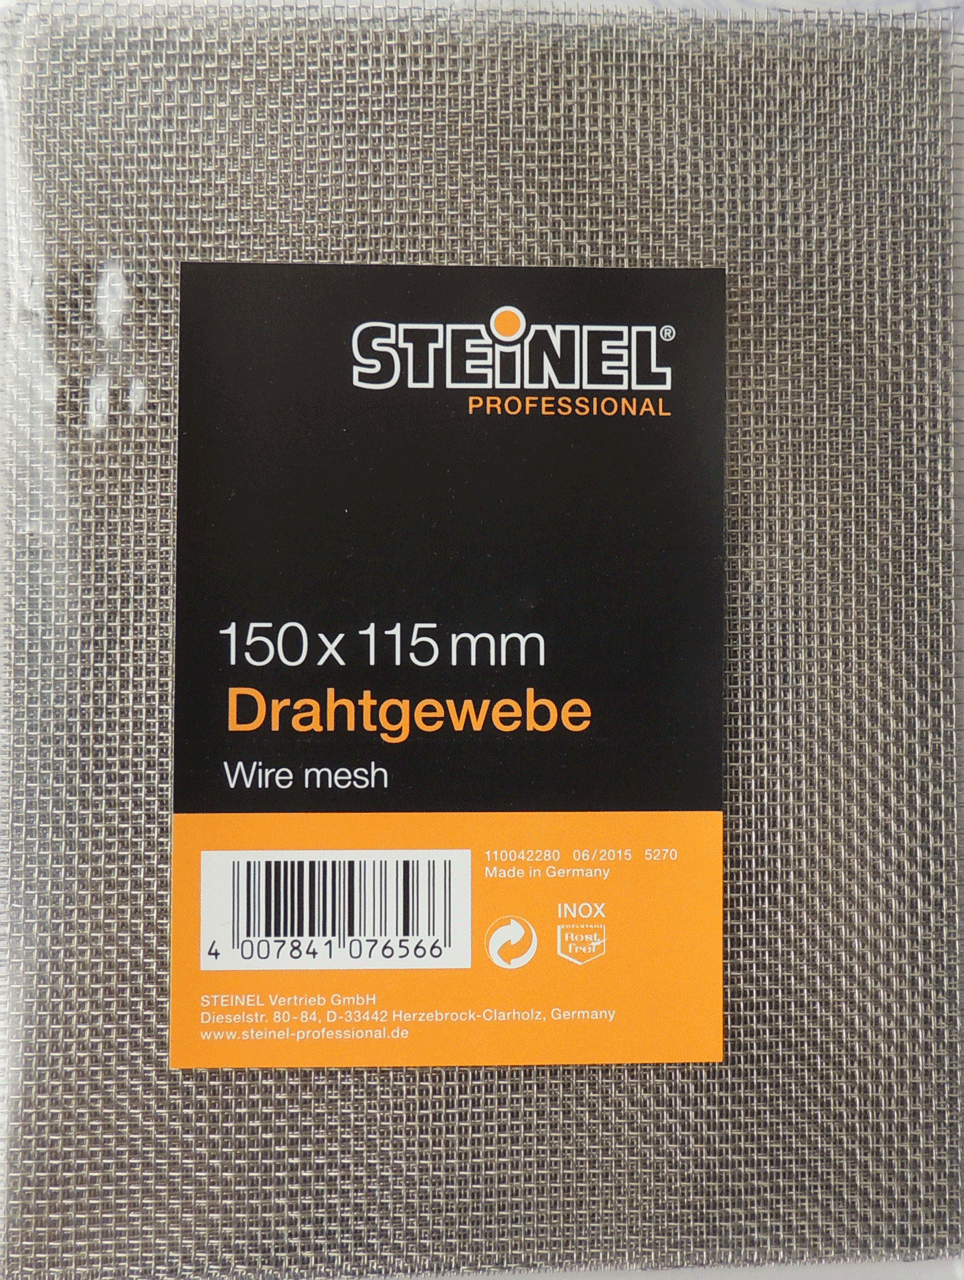 STEINEL Проволочная сетка из стали высшего сорта 150х115 мм комплект 10 шт. STEINEL 076566